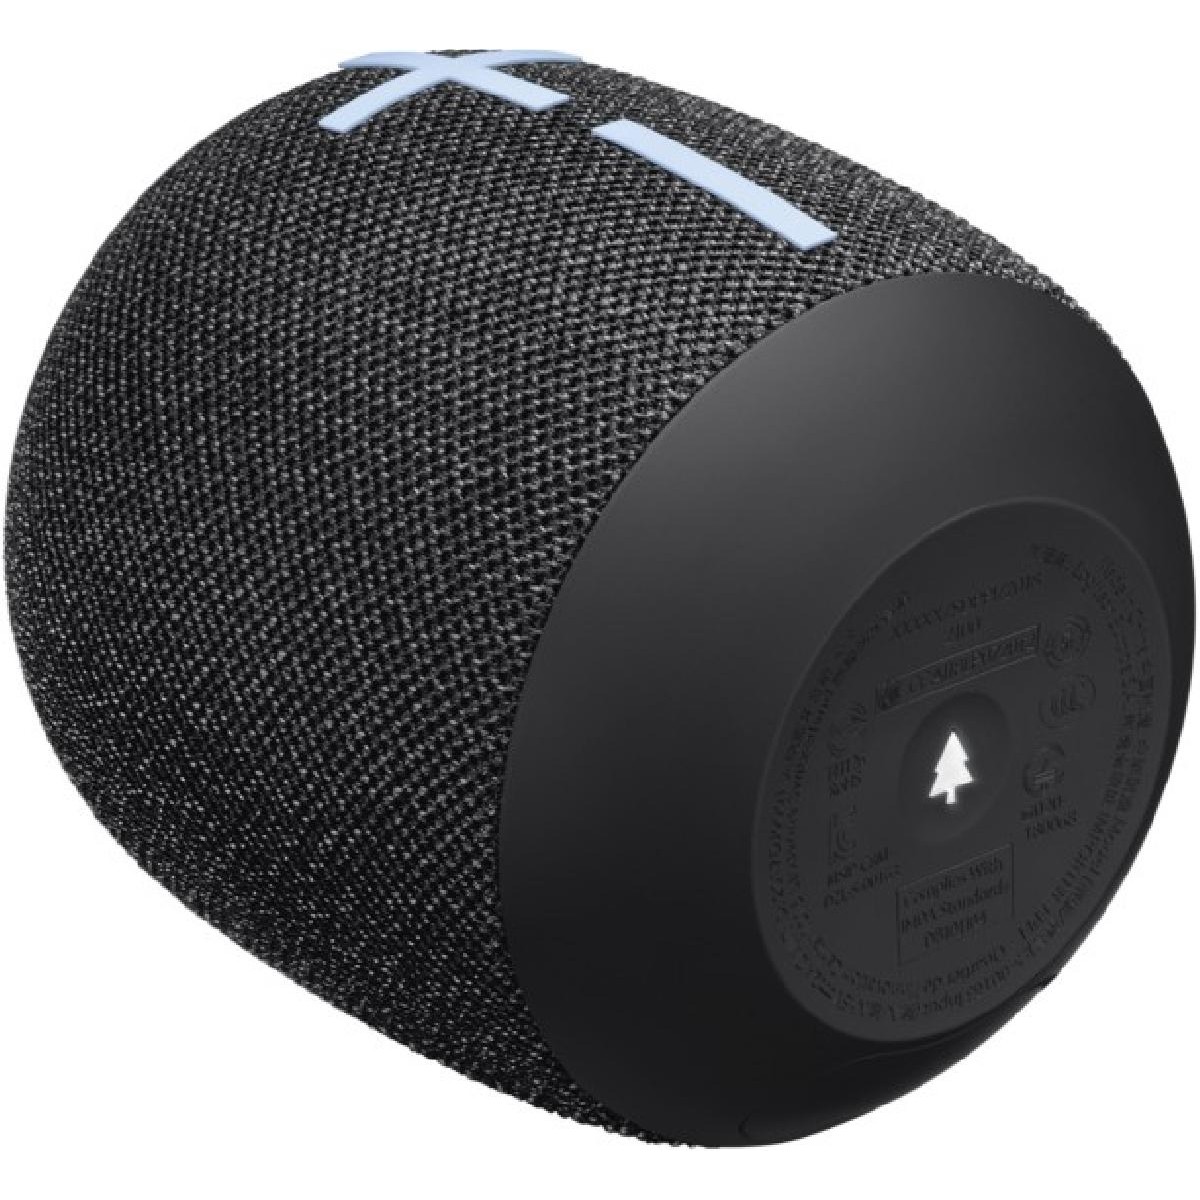 Bluetooth Speakers Ultimate Ears Wonderboom 3 black (984-001829)